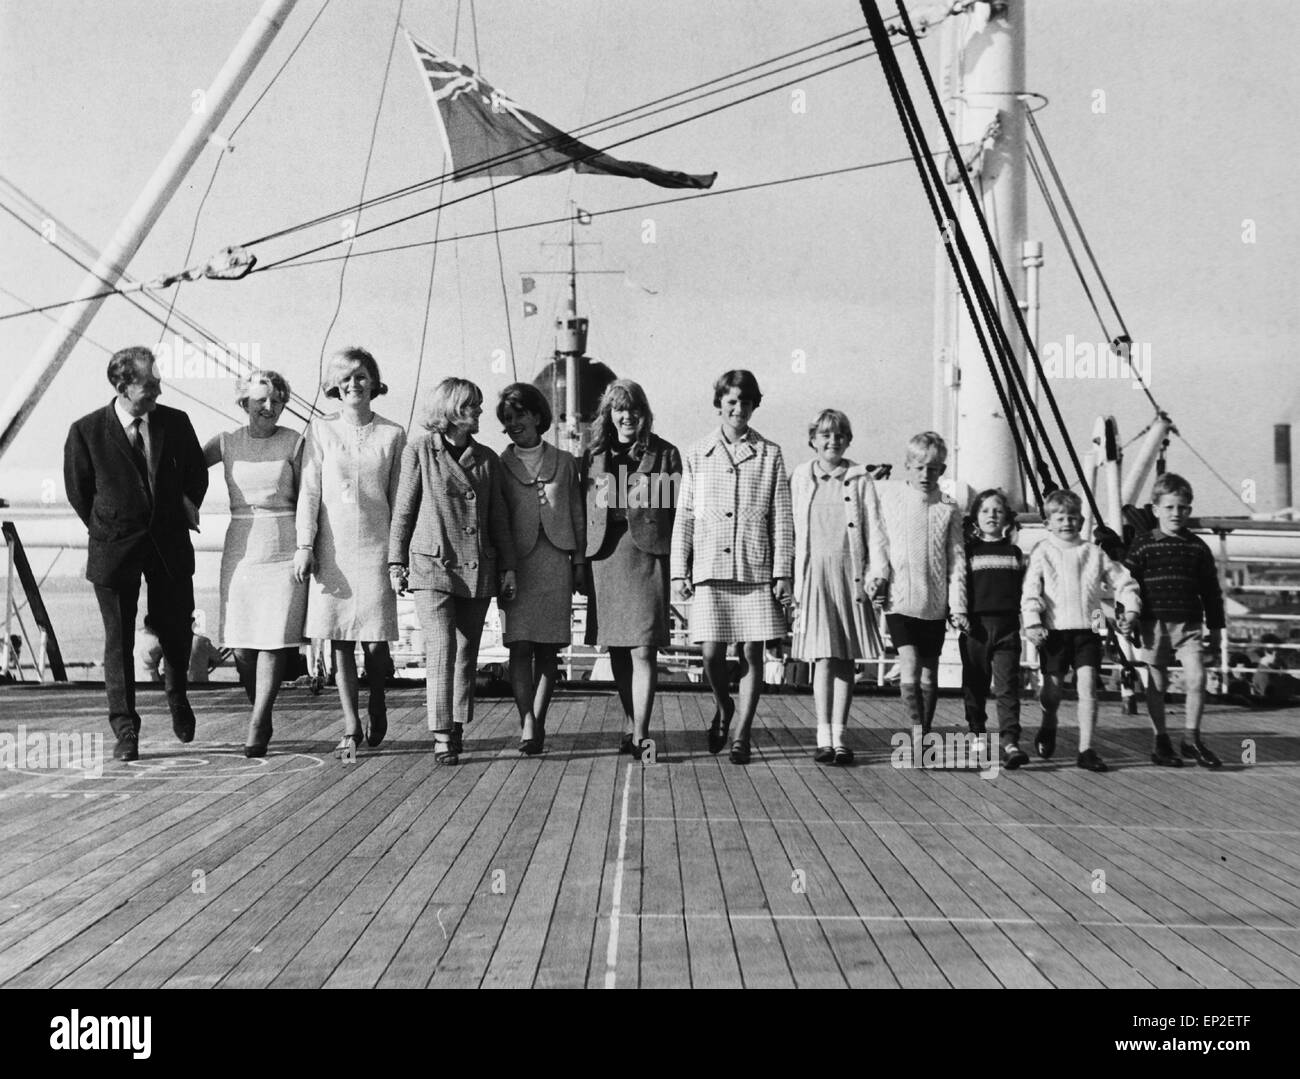 Das Finnegan-Familie aus Dublin an Bord der "Kaiserin von England", Liverpool nach Toronto, Kanada verlassen. Herr Finnegan und seine Frau hatten dreizehn Kinder, die zehn davon auf dem Foto sind. Ihre drei Kinder wurden sie zu einem späteren Zeitpunkt beitreten. 11. Oktober 1966 Stockfoto